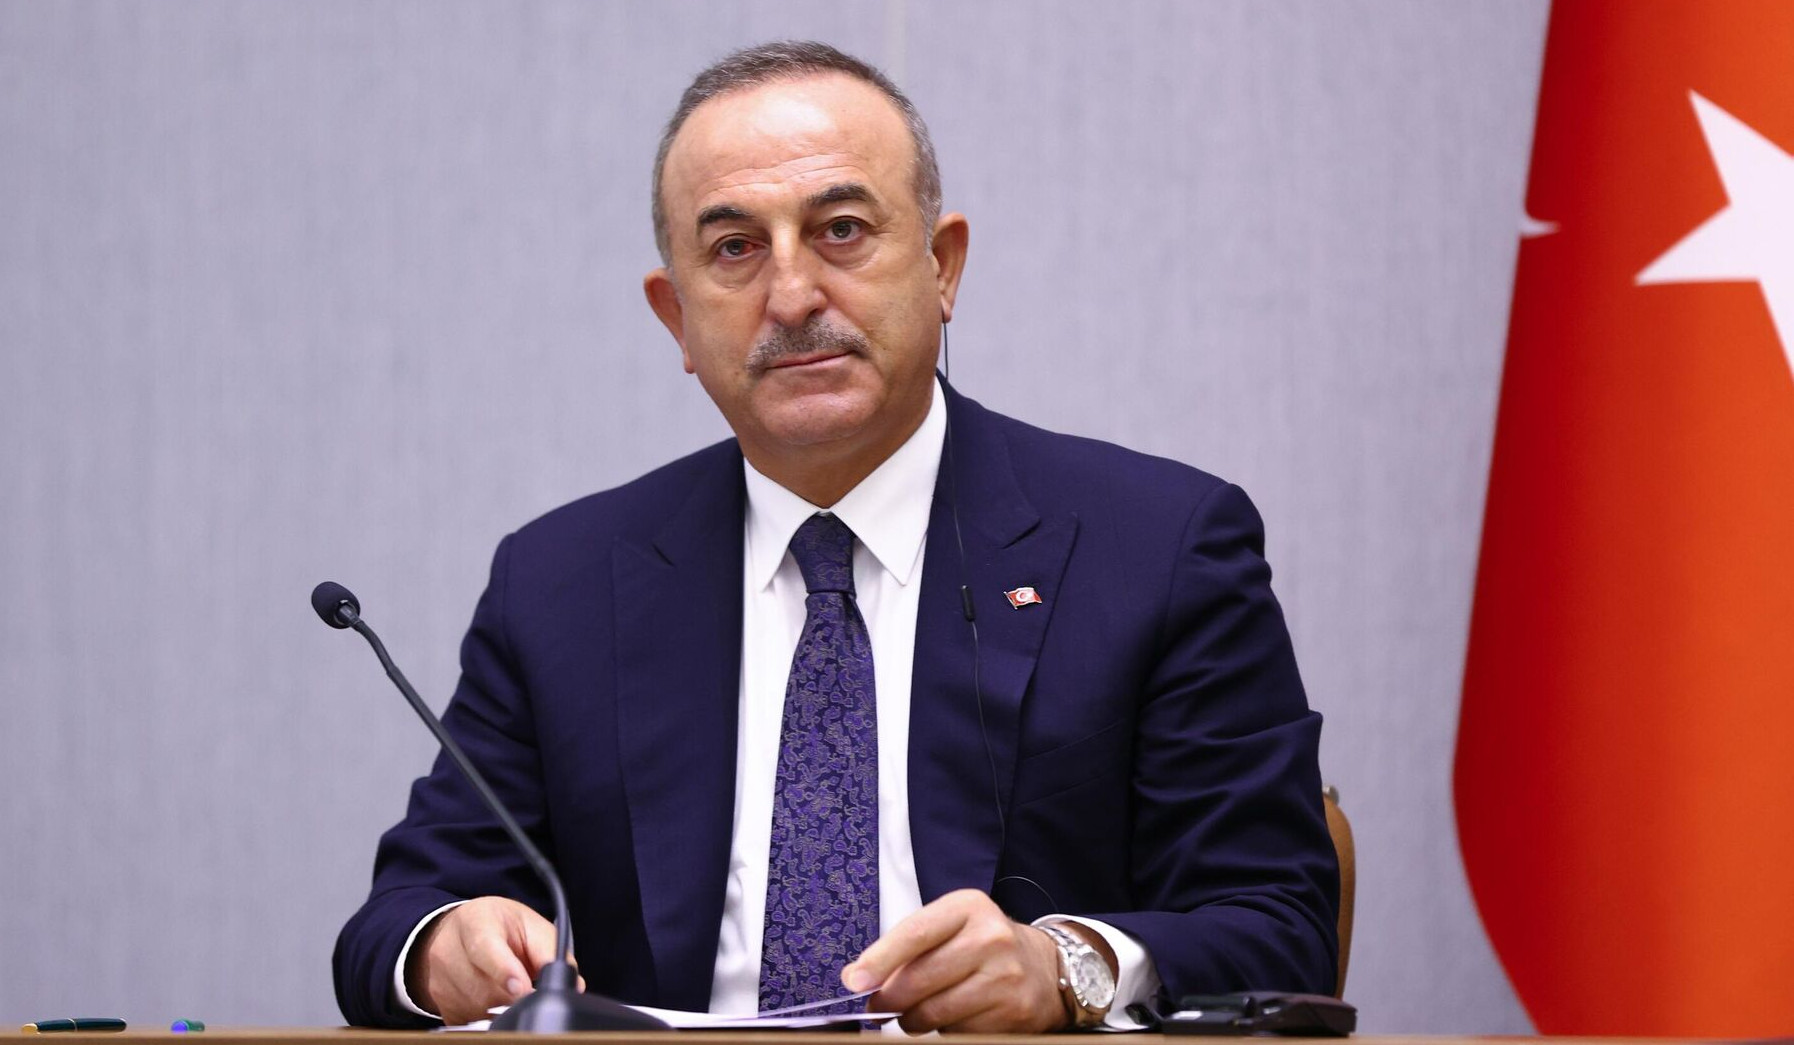 Турция ждет от Армении конкретных шагов по нормализации отношений, одних слов недостаточно: Чавушоглу